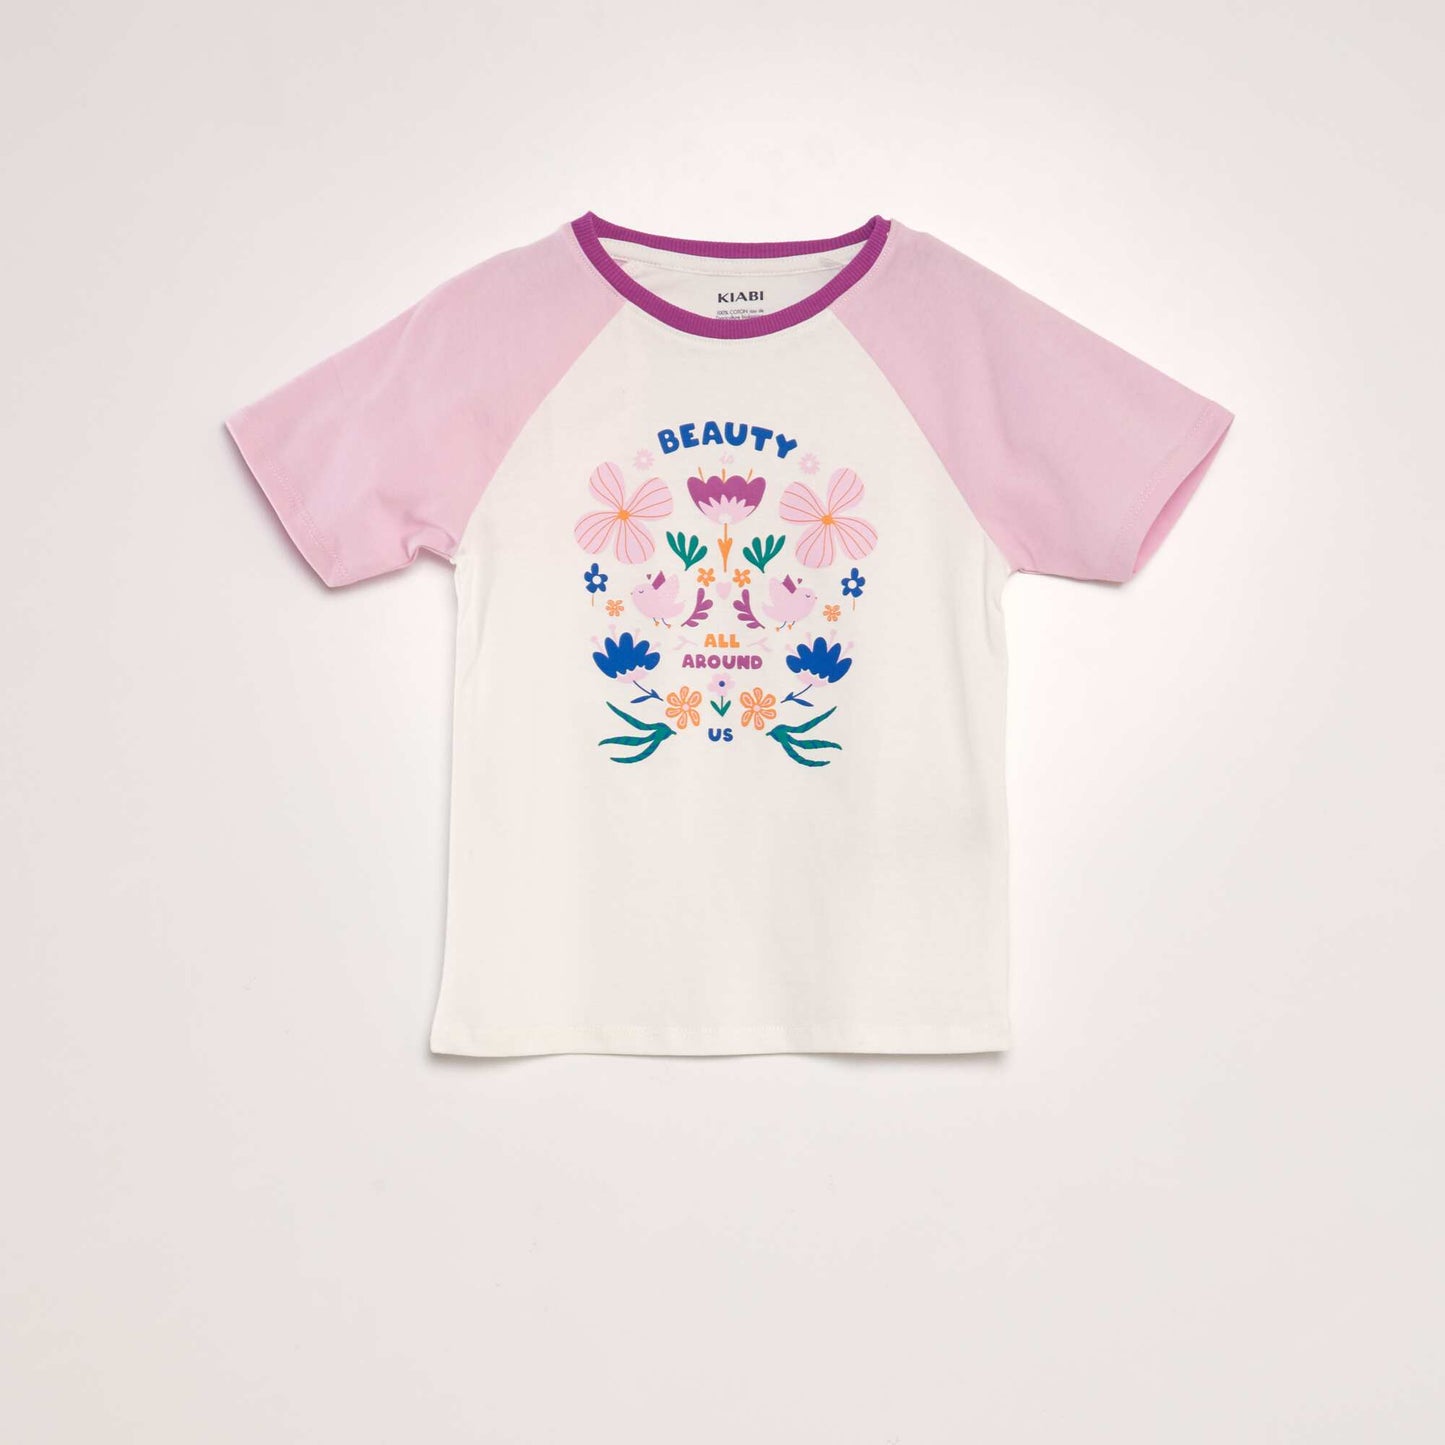 T-shirt en coton à col rond Blanc/rose